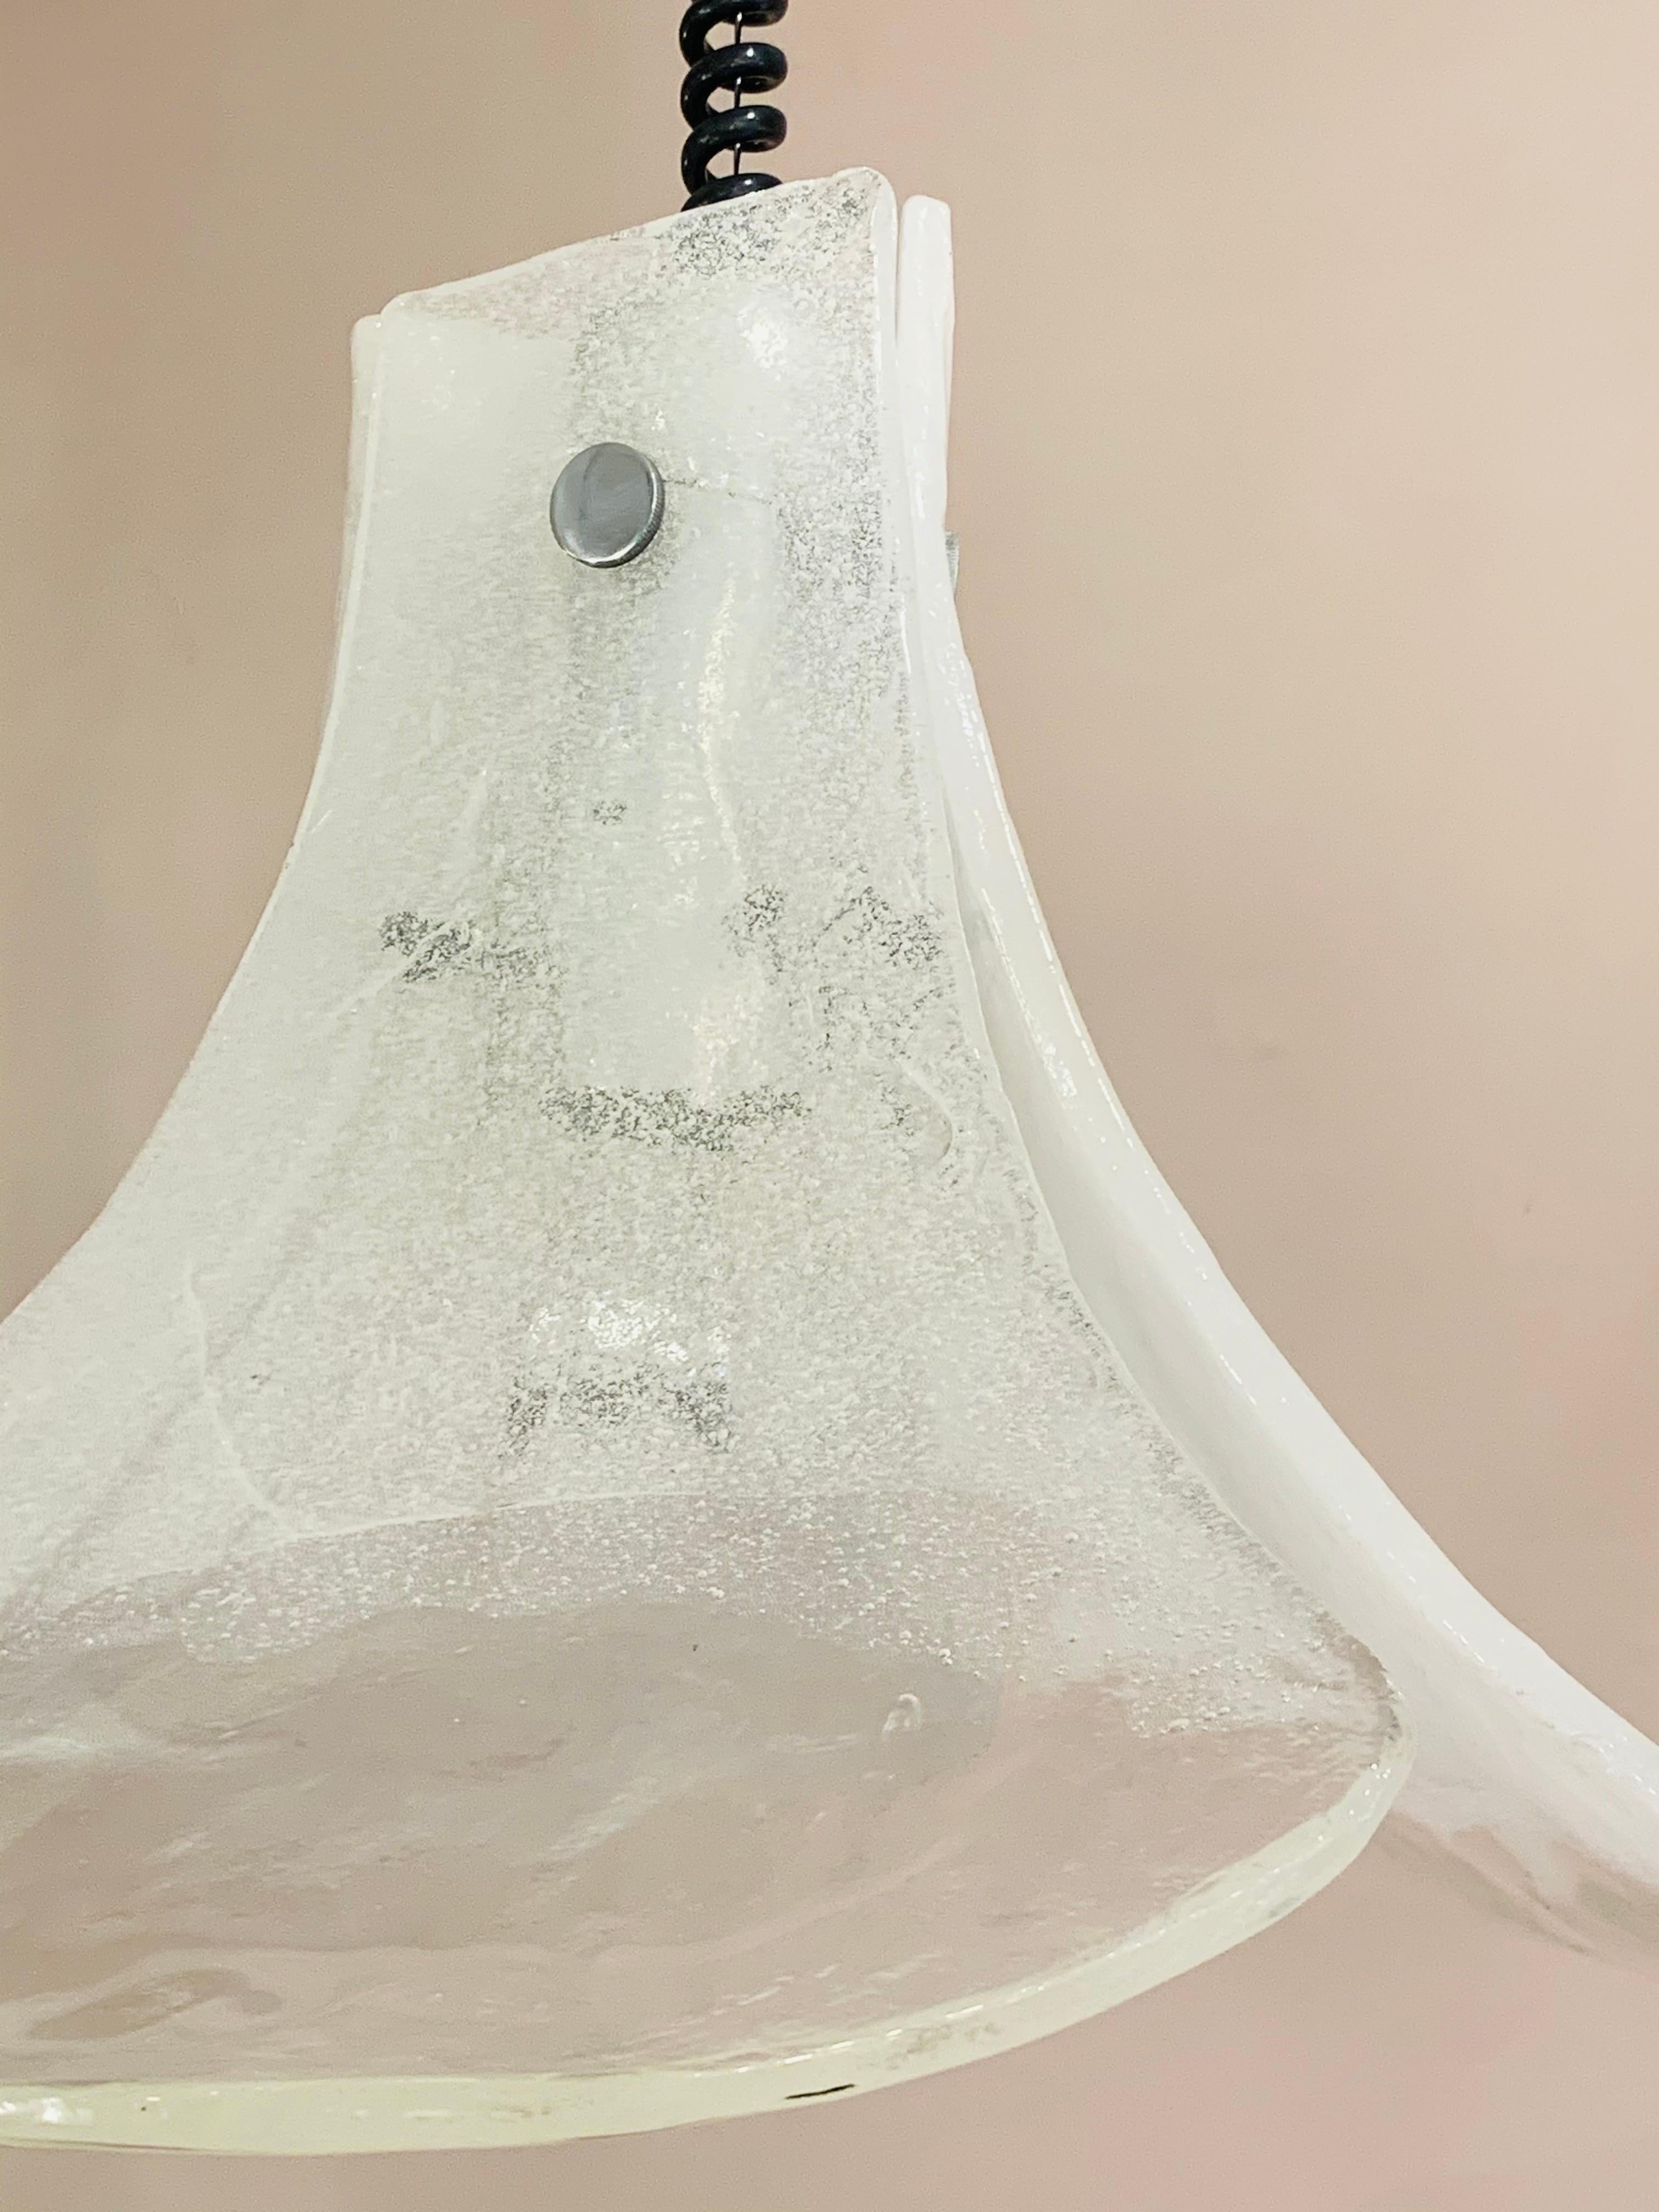 1960s Italian Murano White Glass Pendant Light by Carlo Nason for AV Mazzega 3